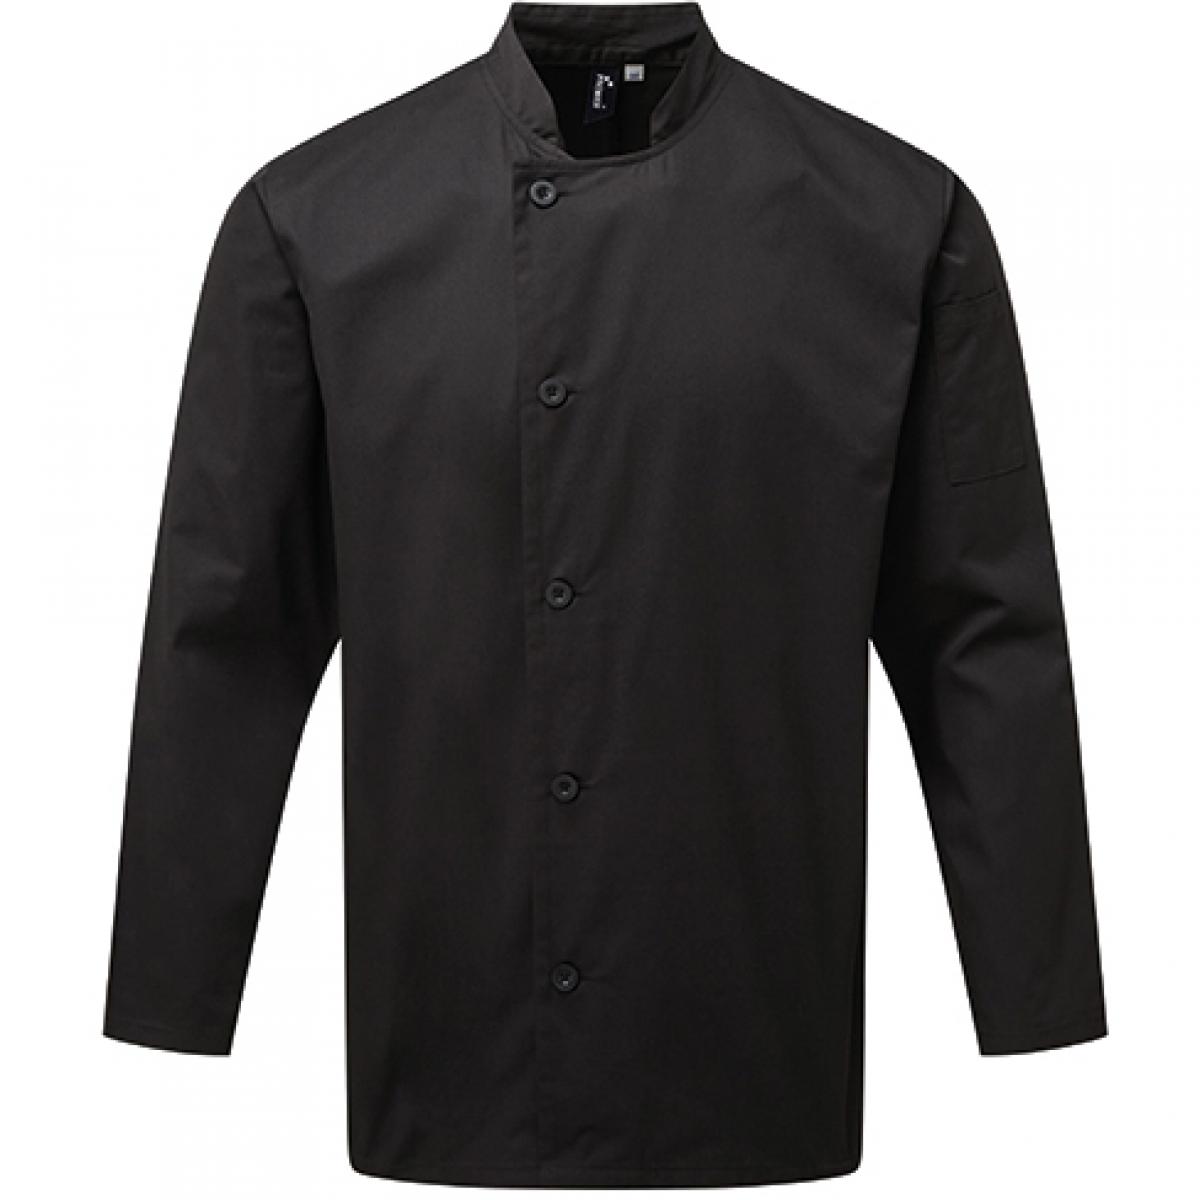 Hersteller: Premier Workwear Herstellernummer: PR901 Artikelbezeichnung: Kochjacke Essential Long Sleeve Chefs Jacket Farbe: Black